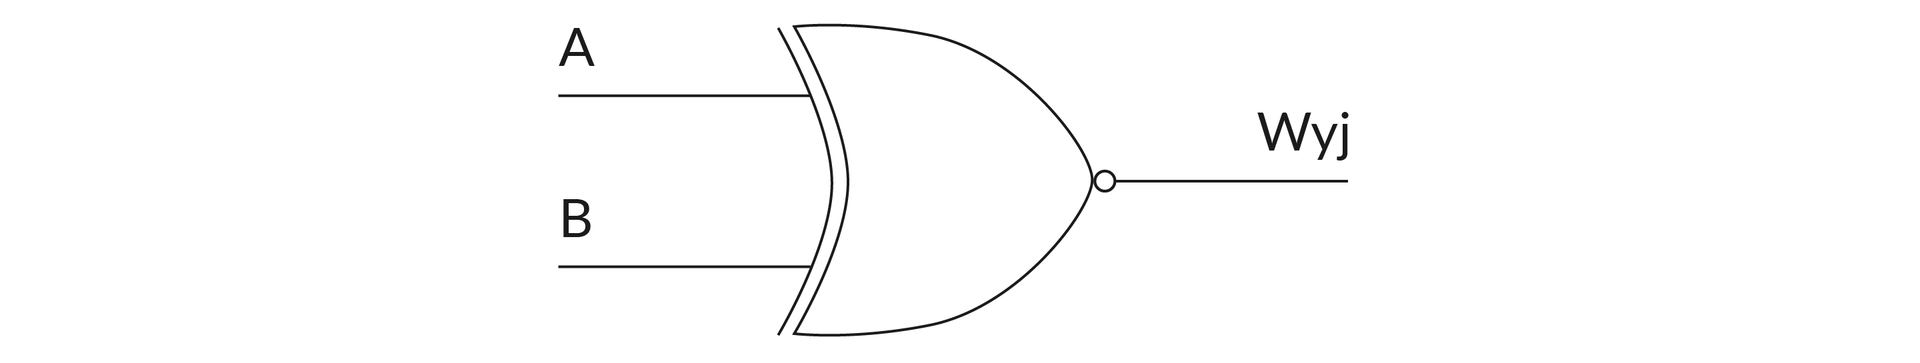 Na rysunku przedstawiono symbol bramki XNOR. Narysowano dwie linie, w równym odstępie. Górną opisano literą A, dolną literą B.  Obydwie linie narysowano w poziomie, stykają się z pionową linią, która narysowana została w niewielkiej odległości od boku figury. Figura ma kształt rybiego ogona. W centralnym punkcie prawej krawędzi figury umieszczono niewielką kropkę. Stąd wyprowadzono linię w poziomie. Opisana została jako Wyj.